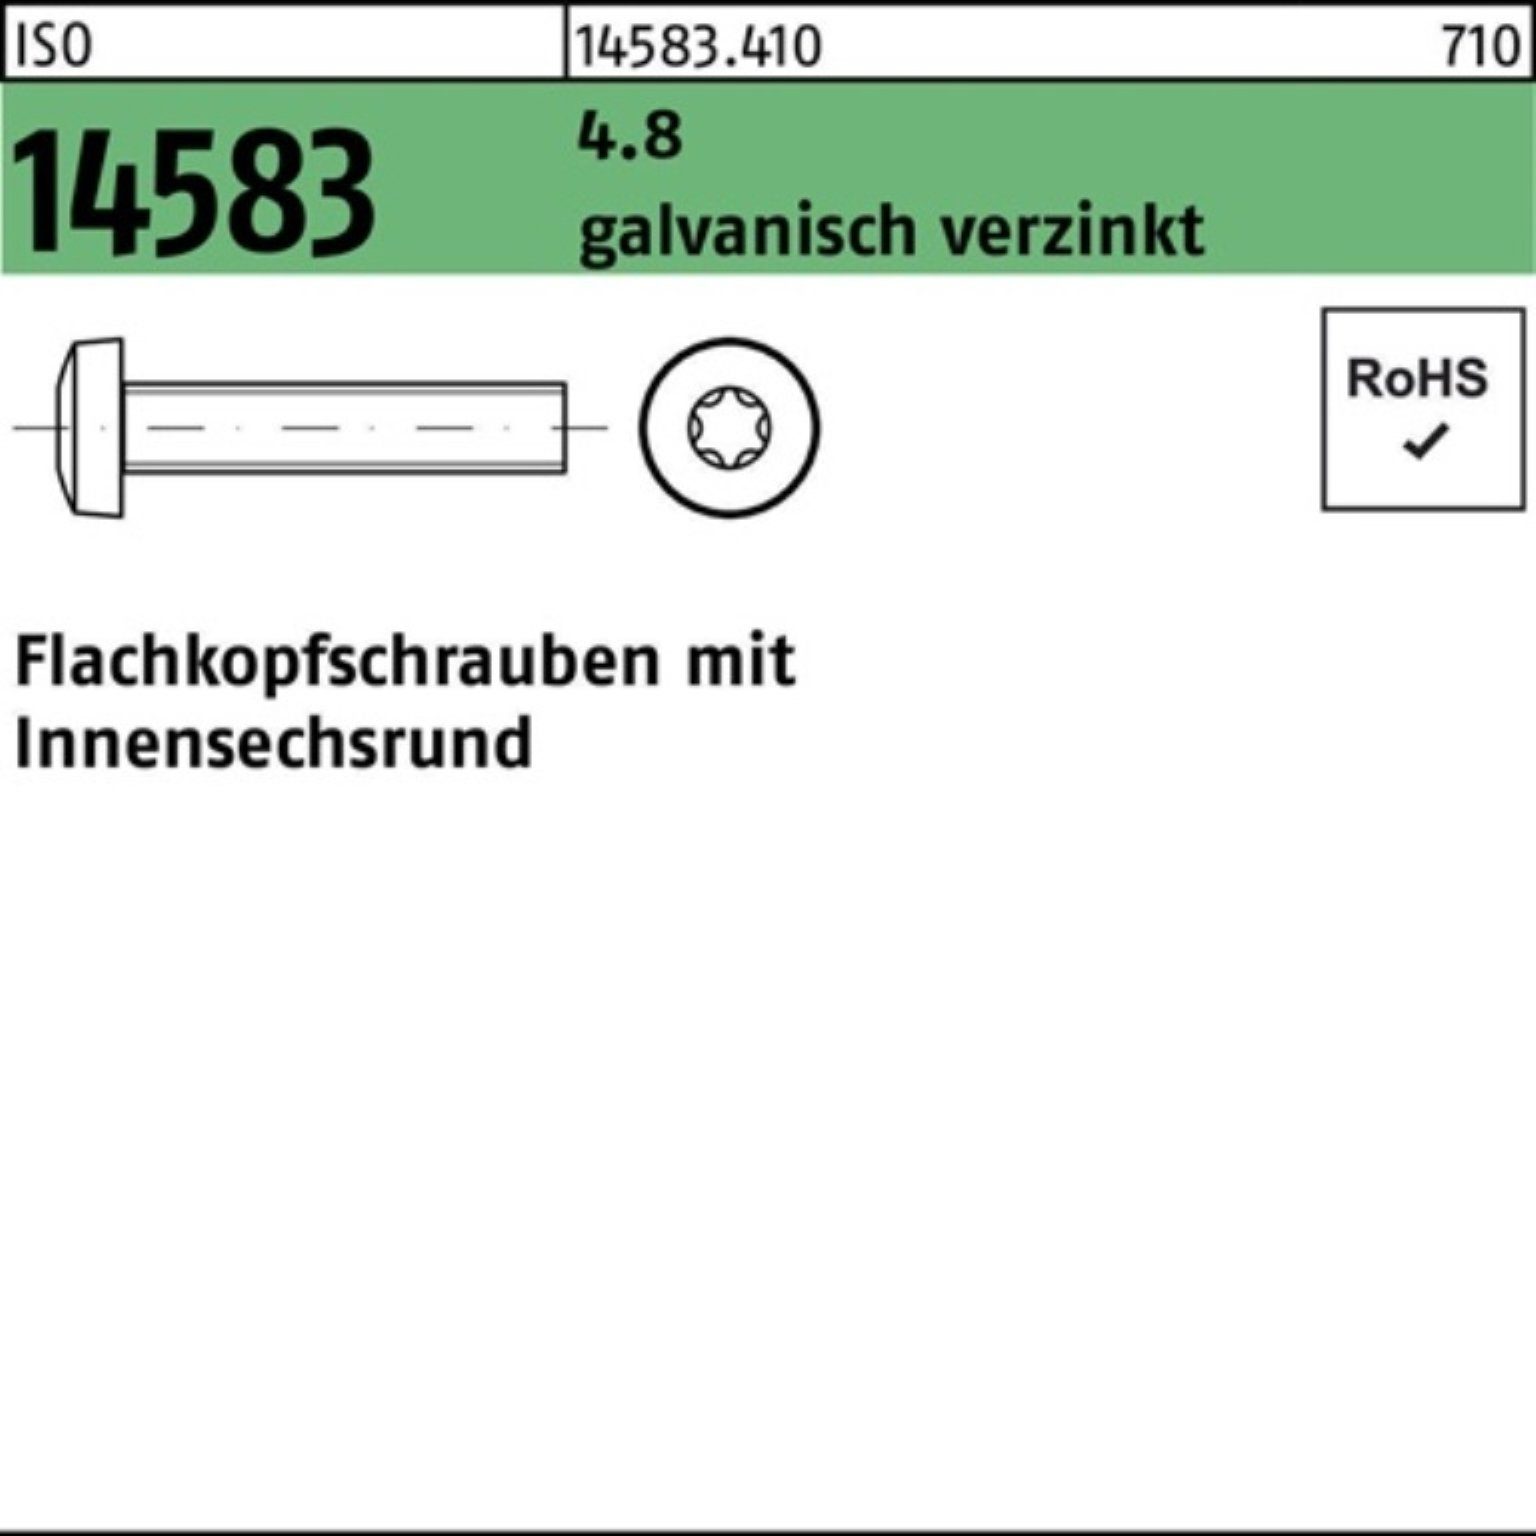 Pack 4.8 Reyher 2000er Schraube M2x12 Flachkopfschraube ISR 2000S galv.verz. 14583 ISO